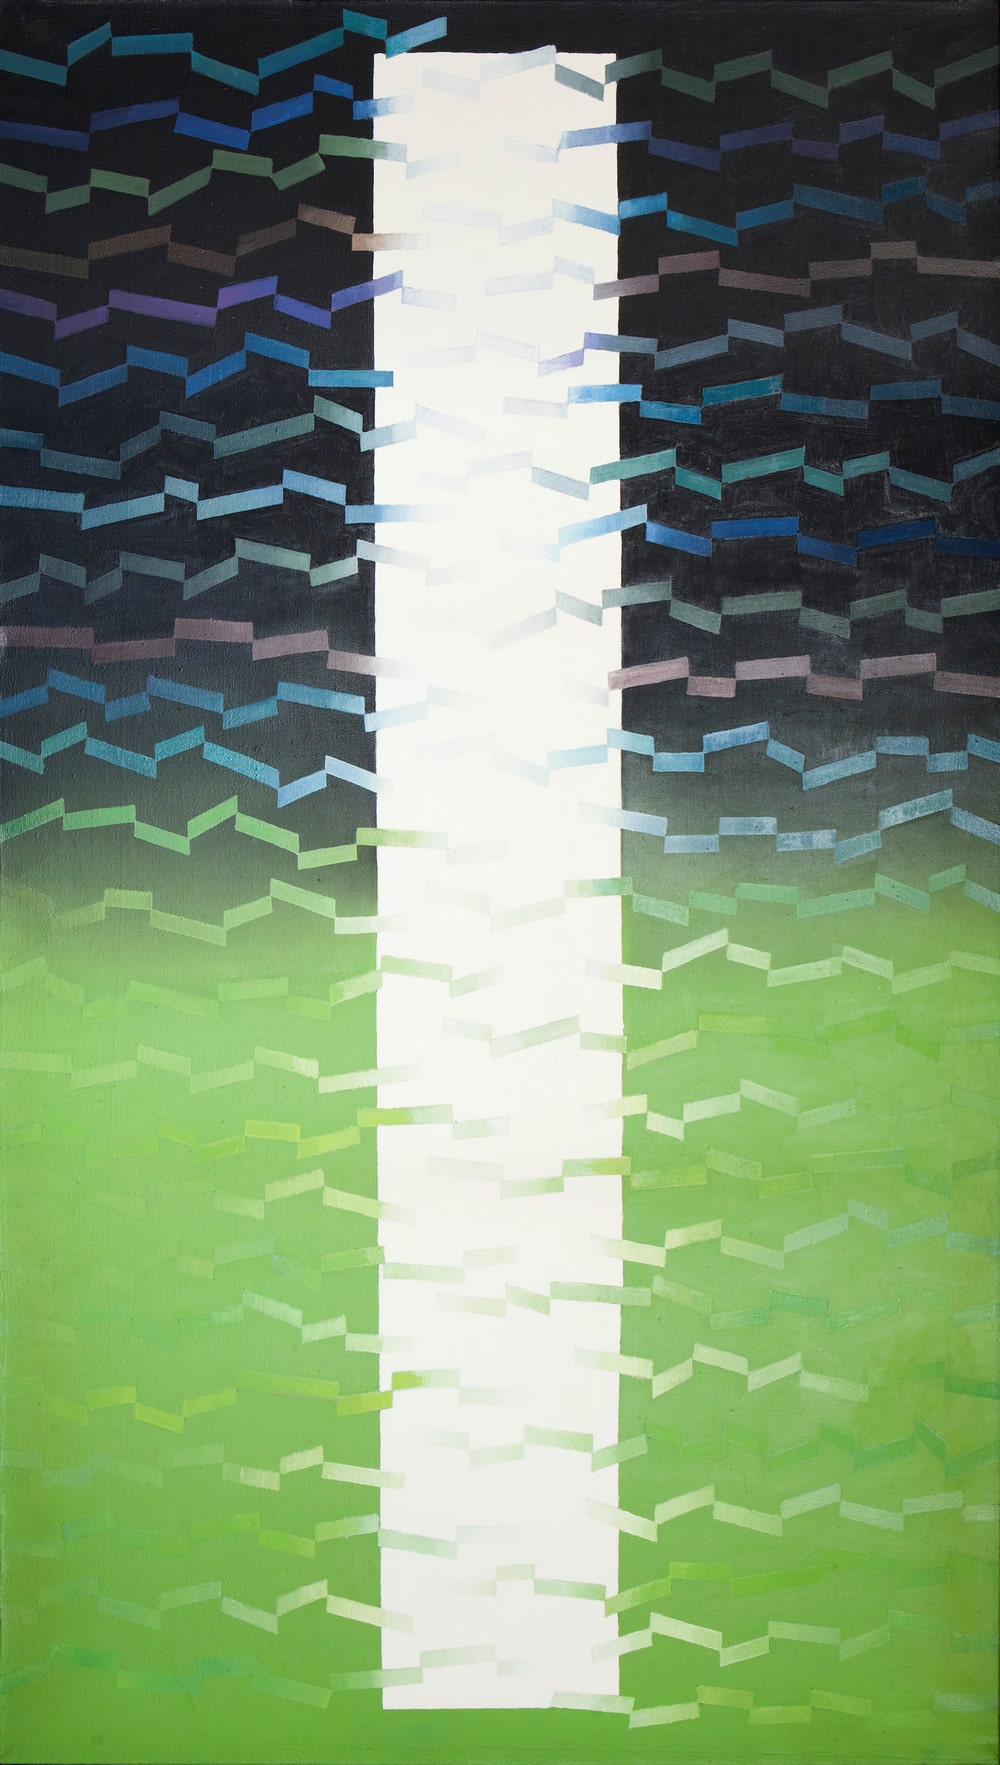 obraz abstrakcyjny - trzy pionowe pasy. środkowy biały, prawy i lewy na dole zielone, u góry ciemnoszare. na całości obrazu kolorowe kreski